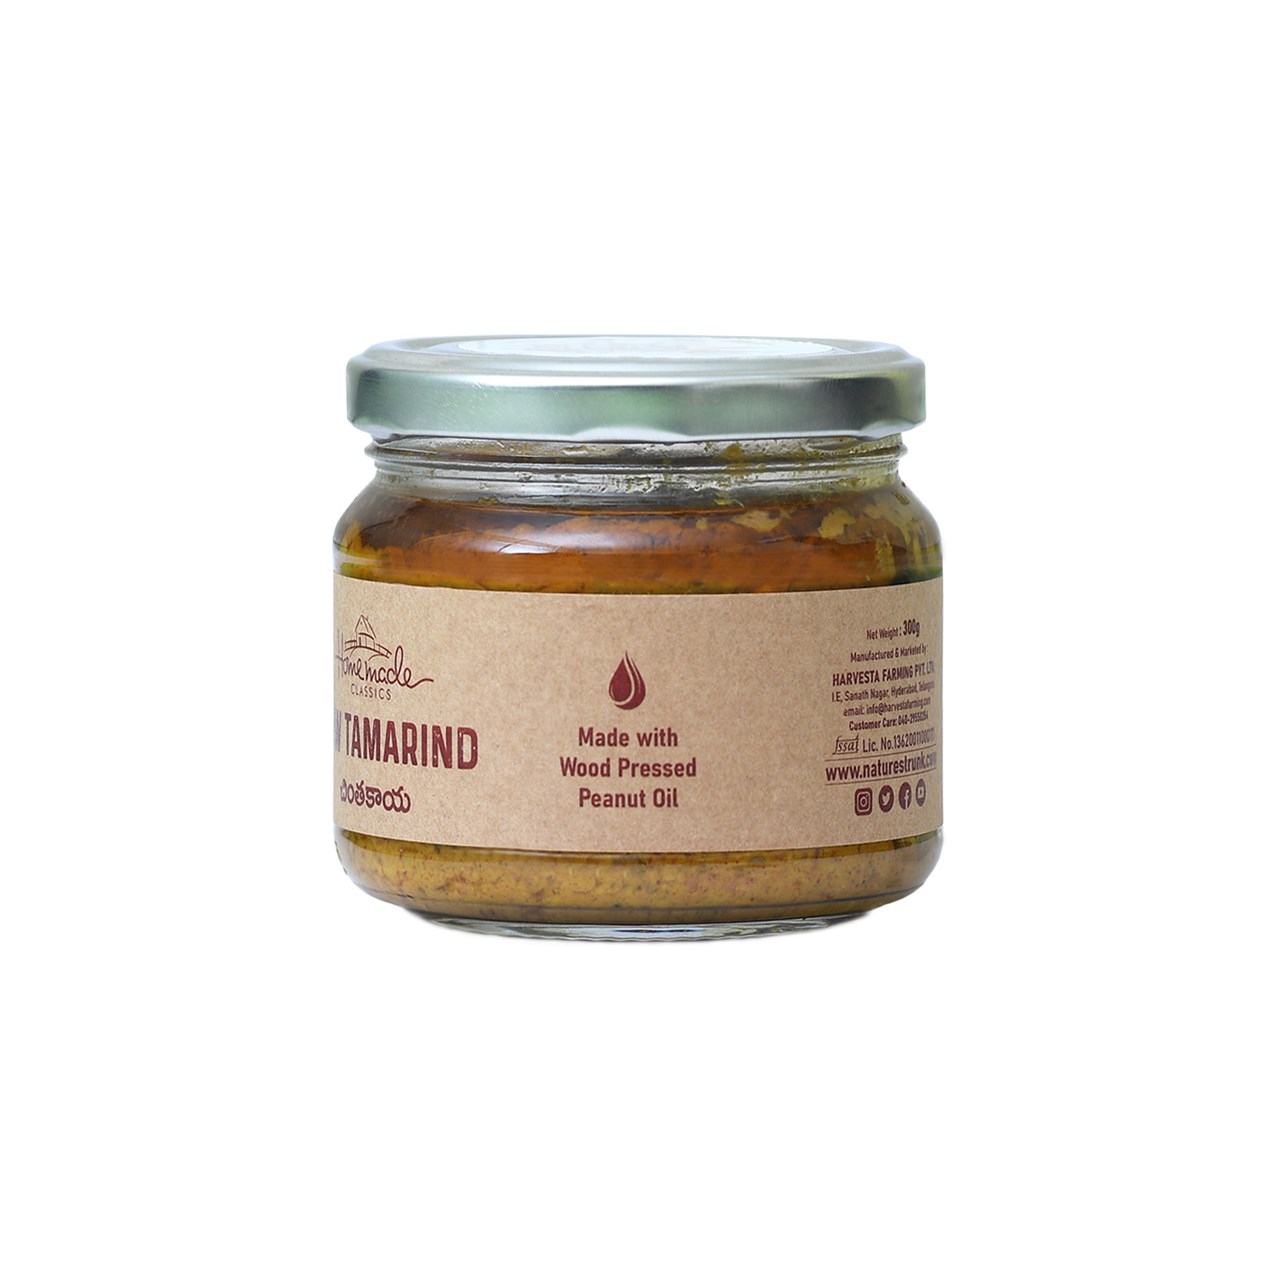 Picture of Raw Tamarind Pickle ( kachi Imli ka Achar / Chintakaya Pachadi ) 300 Grams